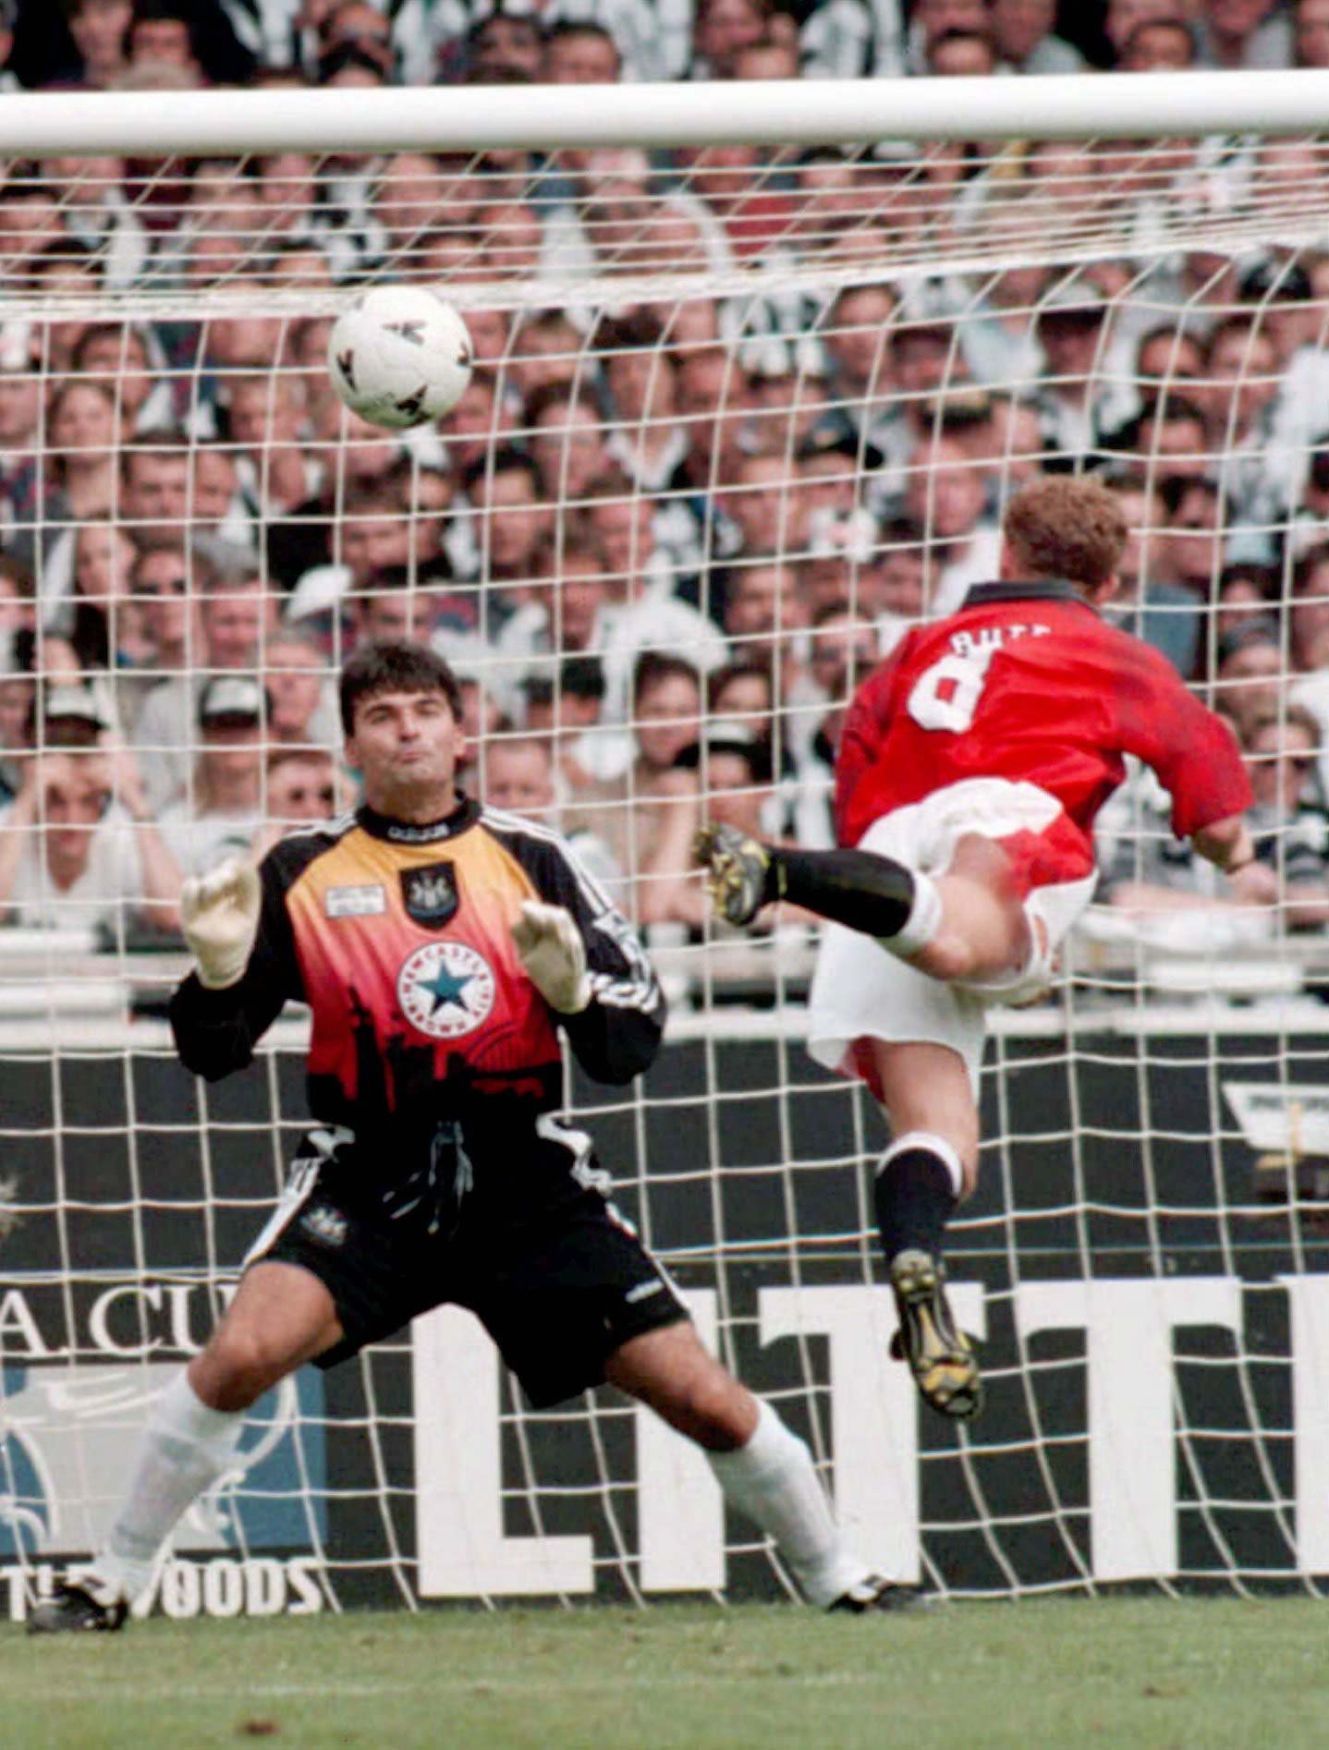 Pavel Srníček (Newcastle) - Nicky Butt (Manchester United), 1996